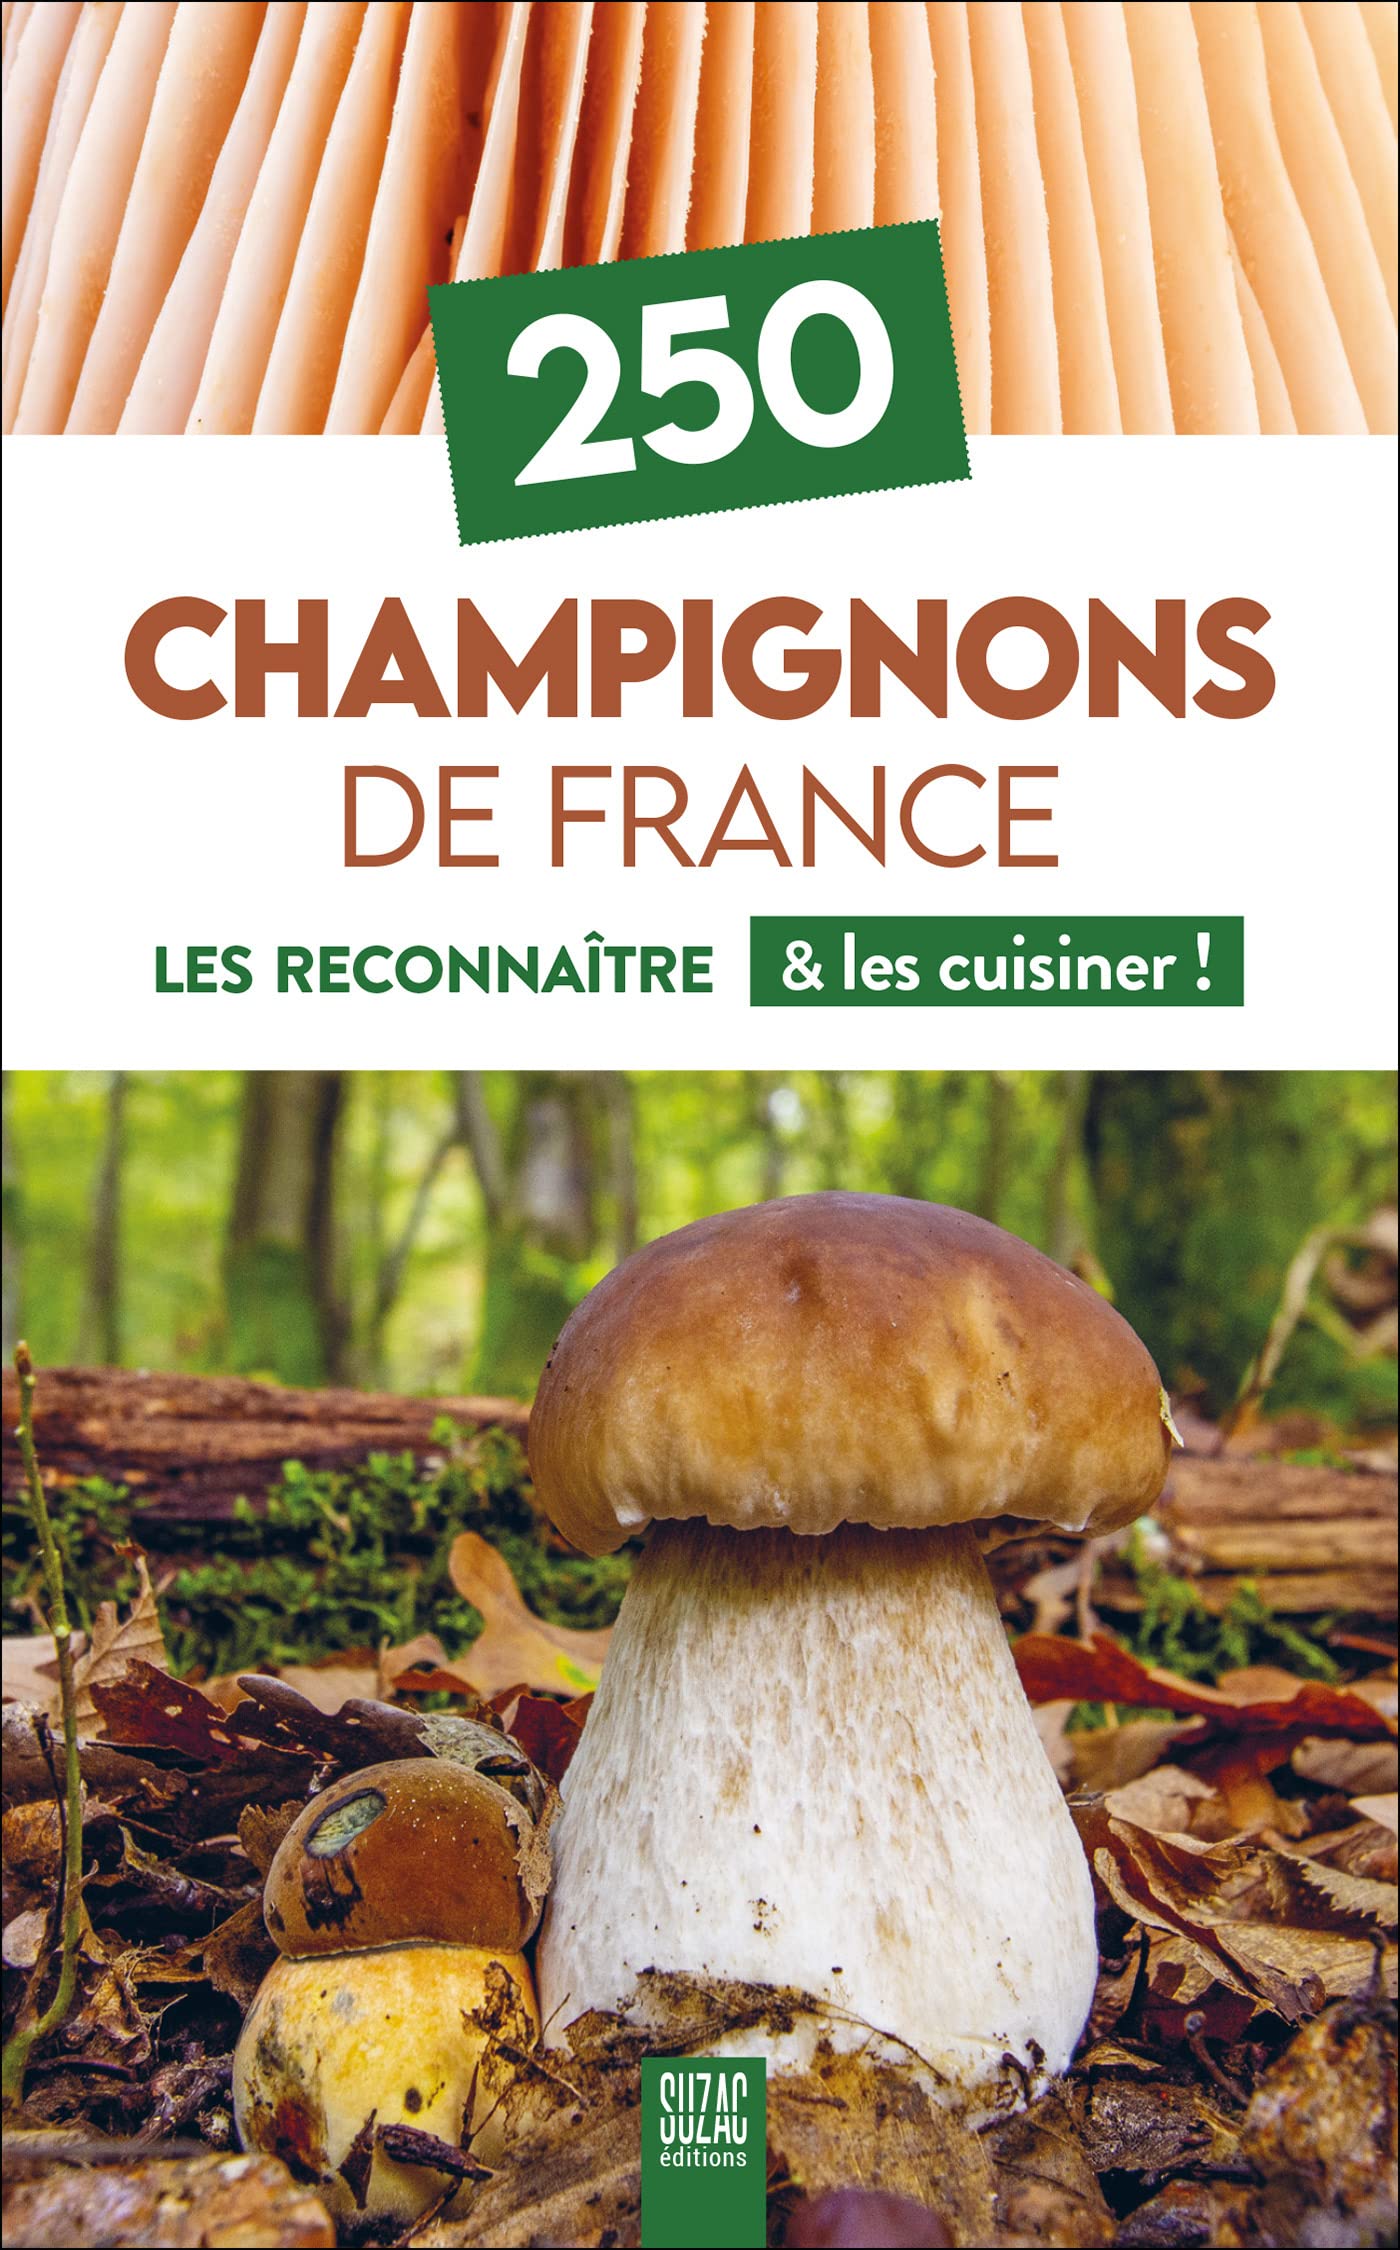 250 Champignons de France: Les reconnaître & les cuisiner